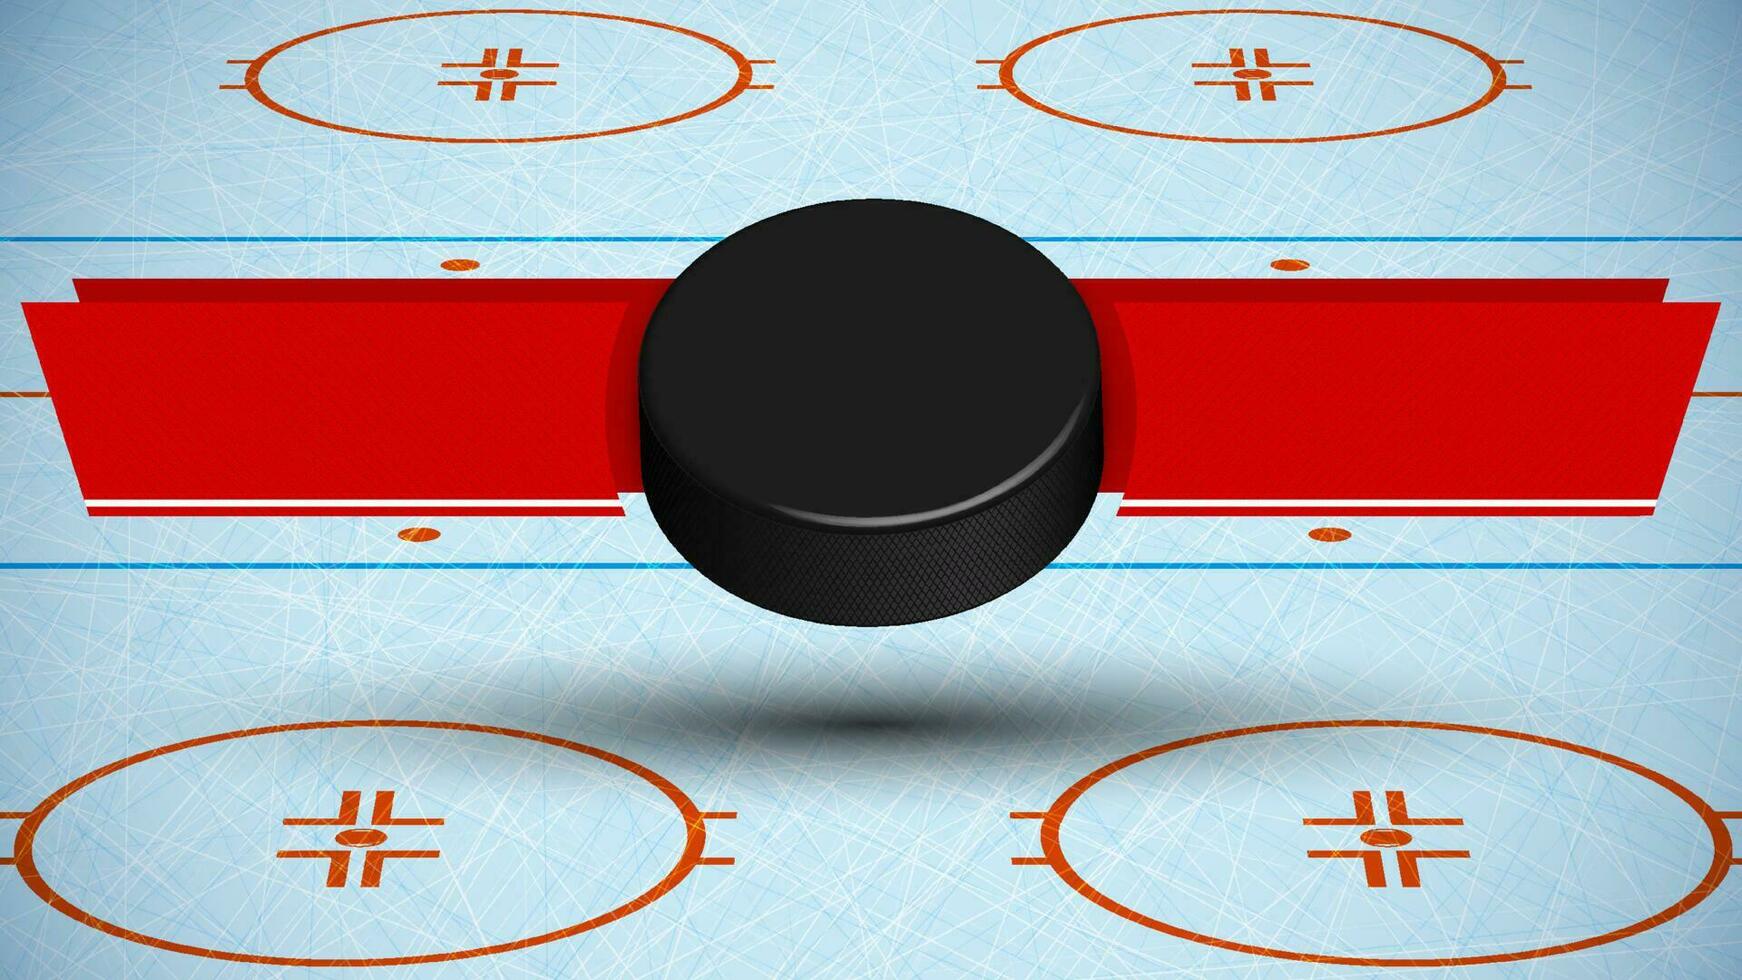 Vorlage zum Turnier mit Eis Eishockey Puck auf Hintergrund von Sport Eis Eisbahn mit Bänder zum Ankündigung von Namen von Mannschaften. Vektor